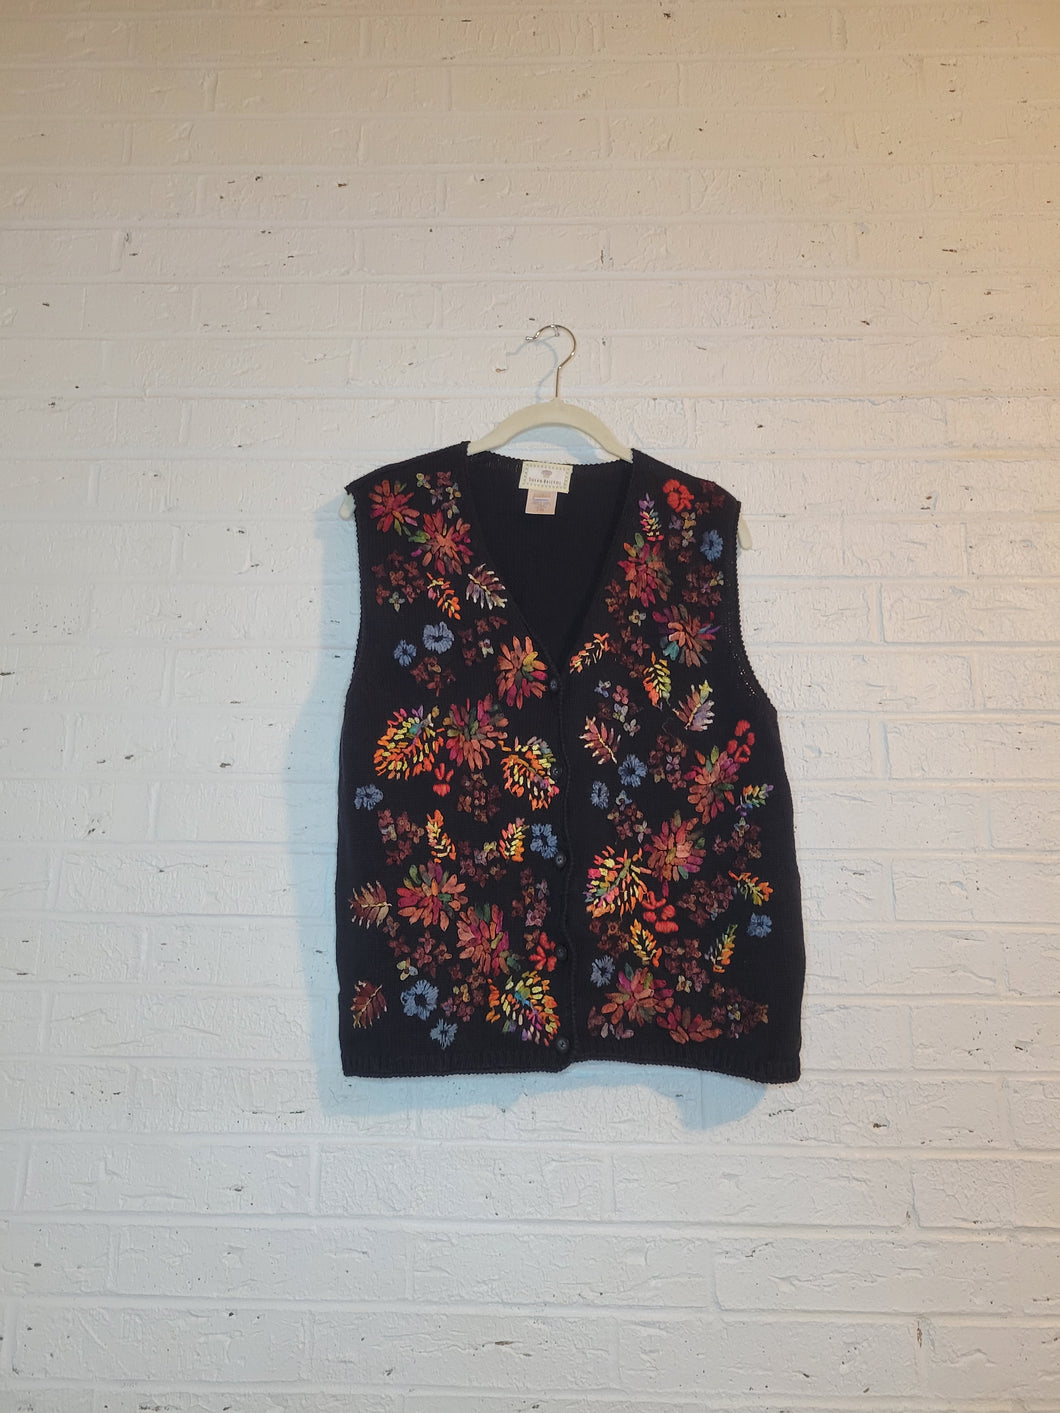 M/L - Embroidered floral vest